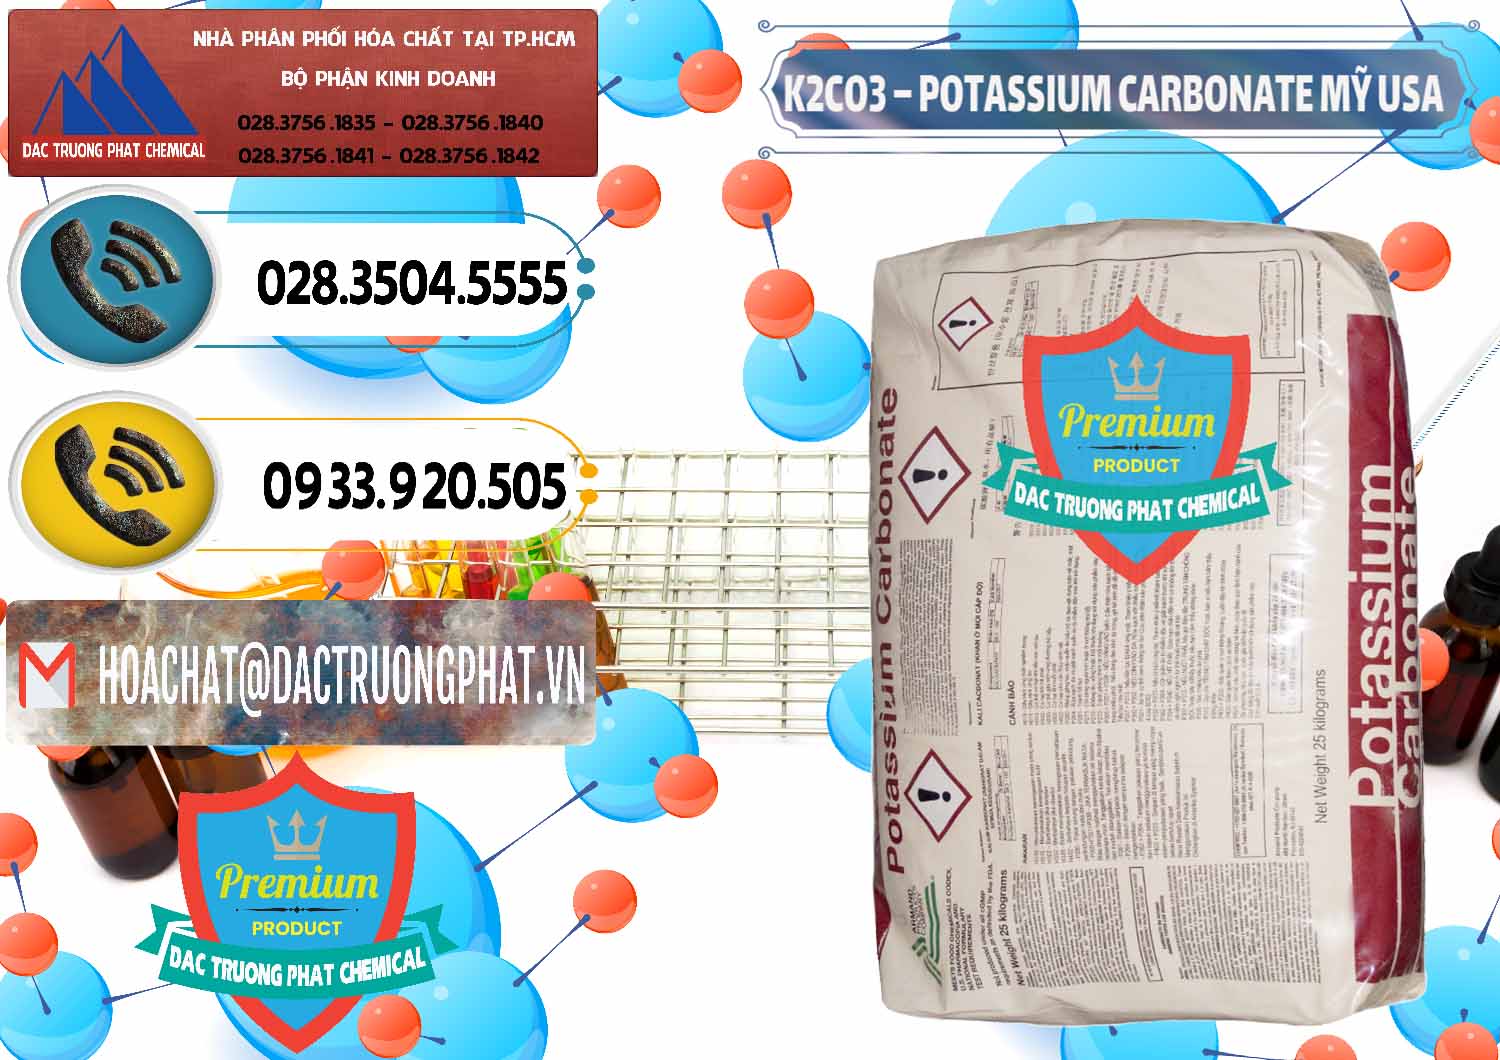 Công ty chuyên phân phối & bán K2Co3 – Potassium Carbonate Mỹ USA - 0082 - Chuyên phân phối _ cung ứng hóa chất tại TP.HCM - hoachatdetnhuom.vn